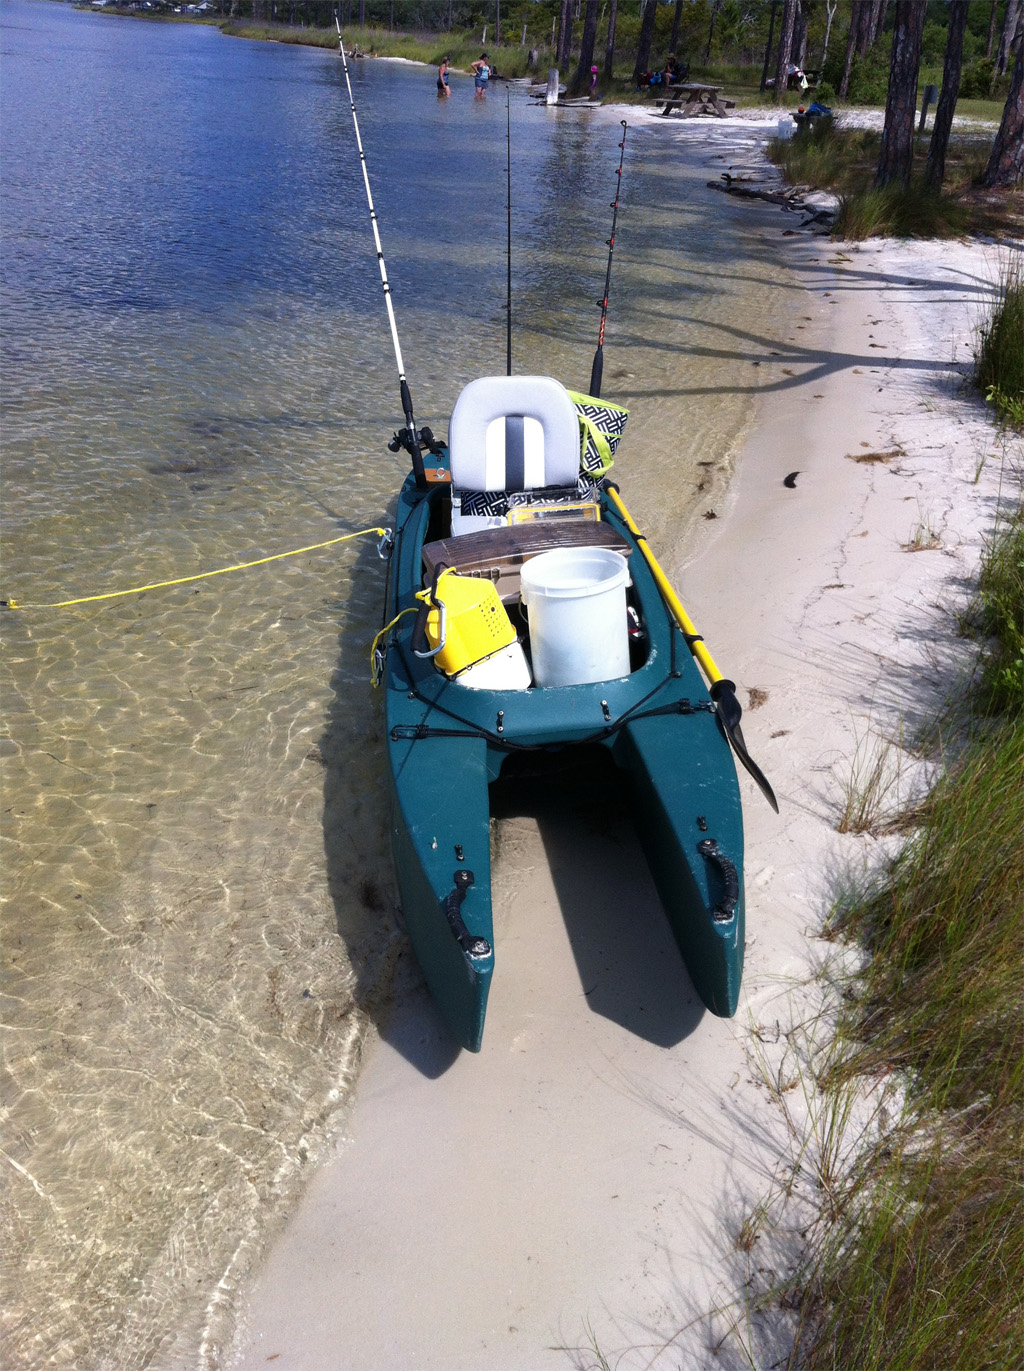 My Motorized W500 Fishing Kayak Wavewalk® Stable Fishing Kayaks